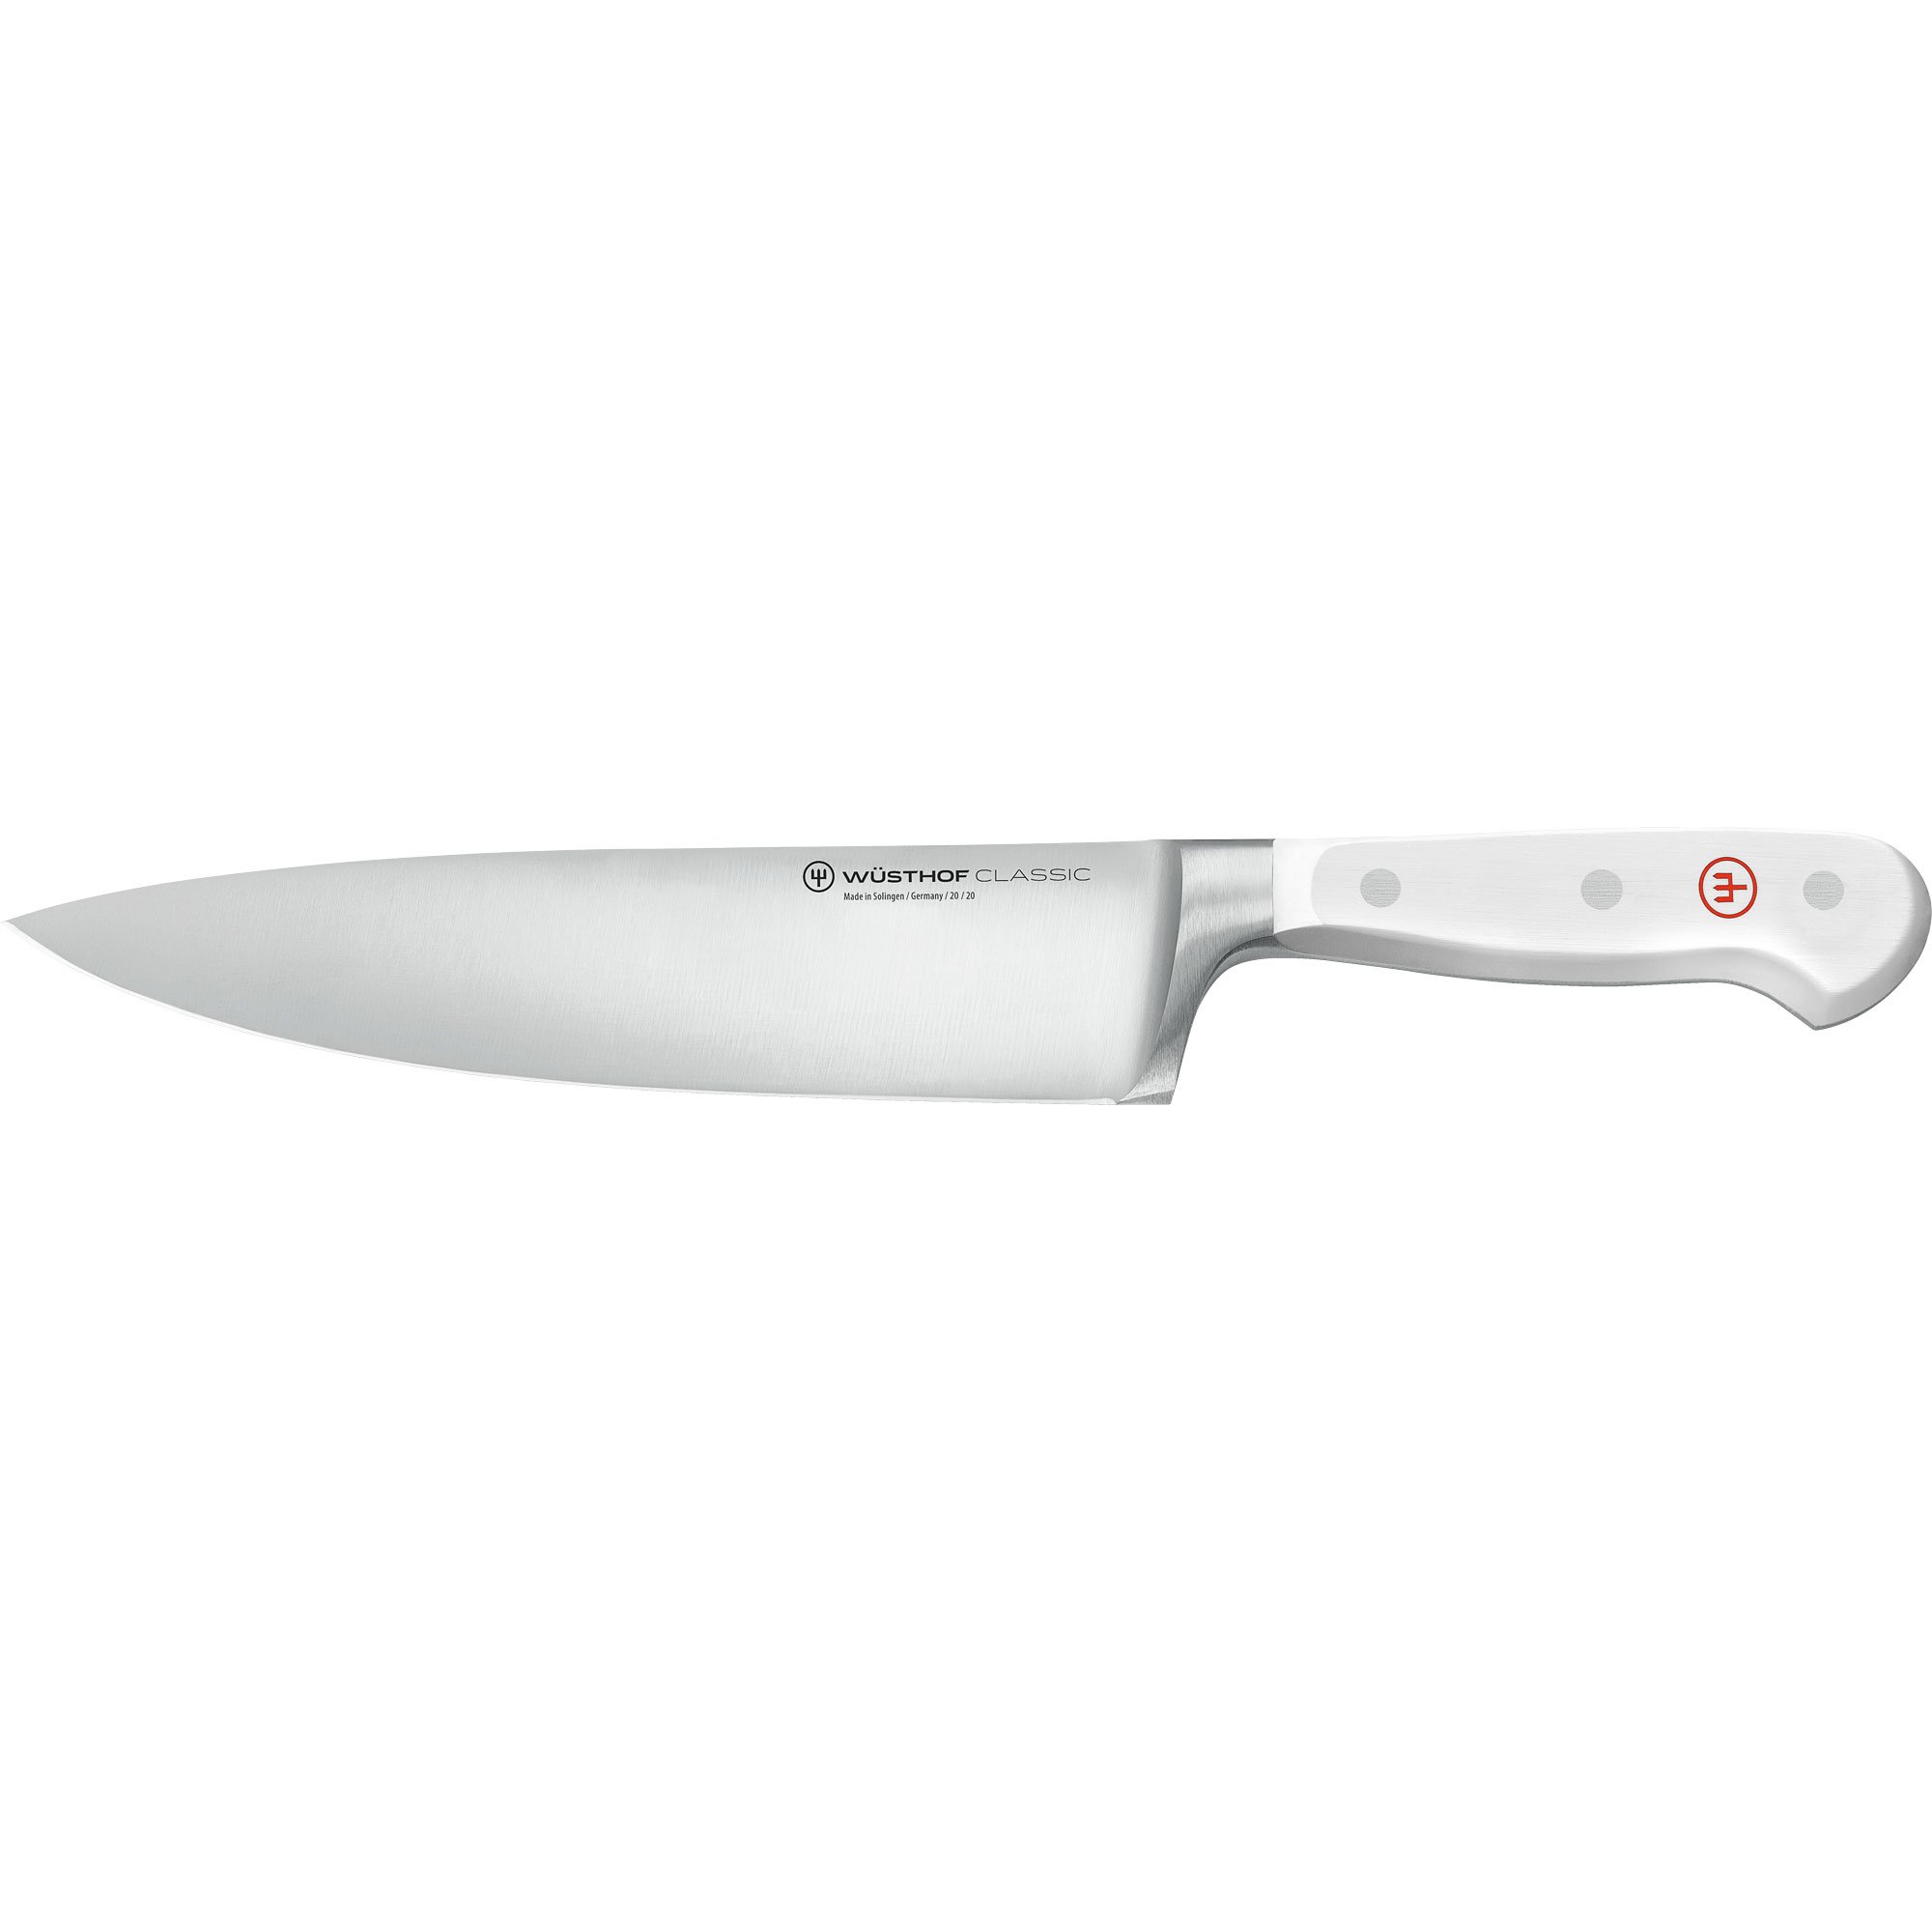 Wüsthof Classic hvit kokkekniv 20 cm. Kokkekniv